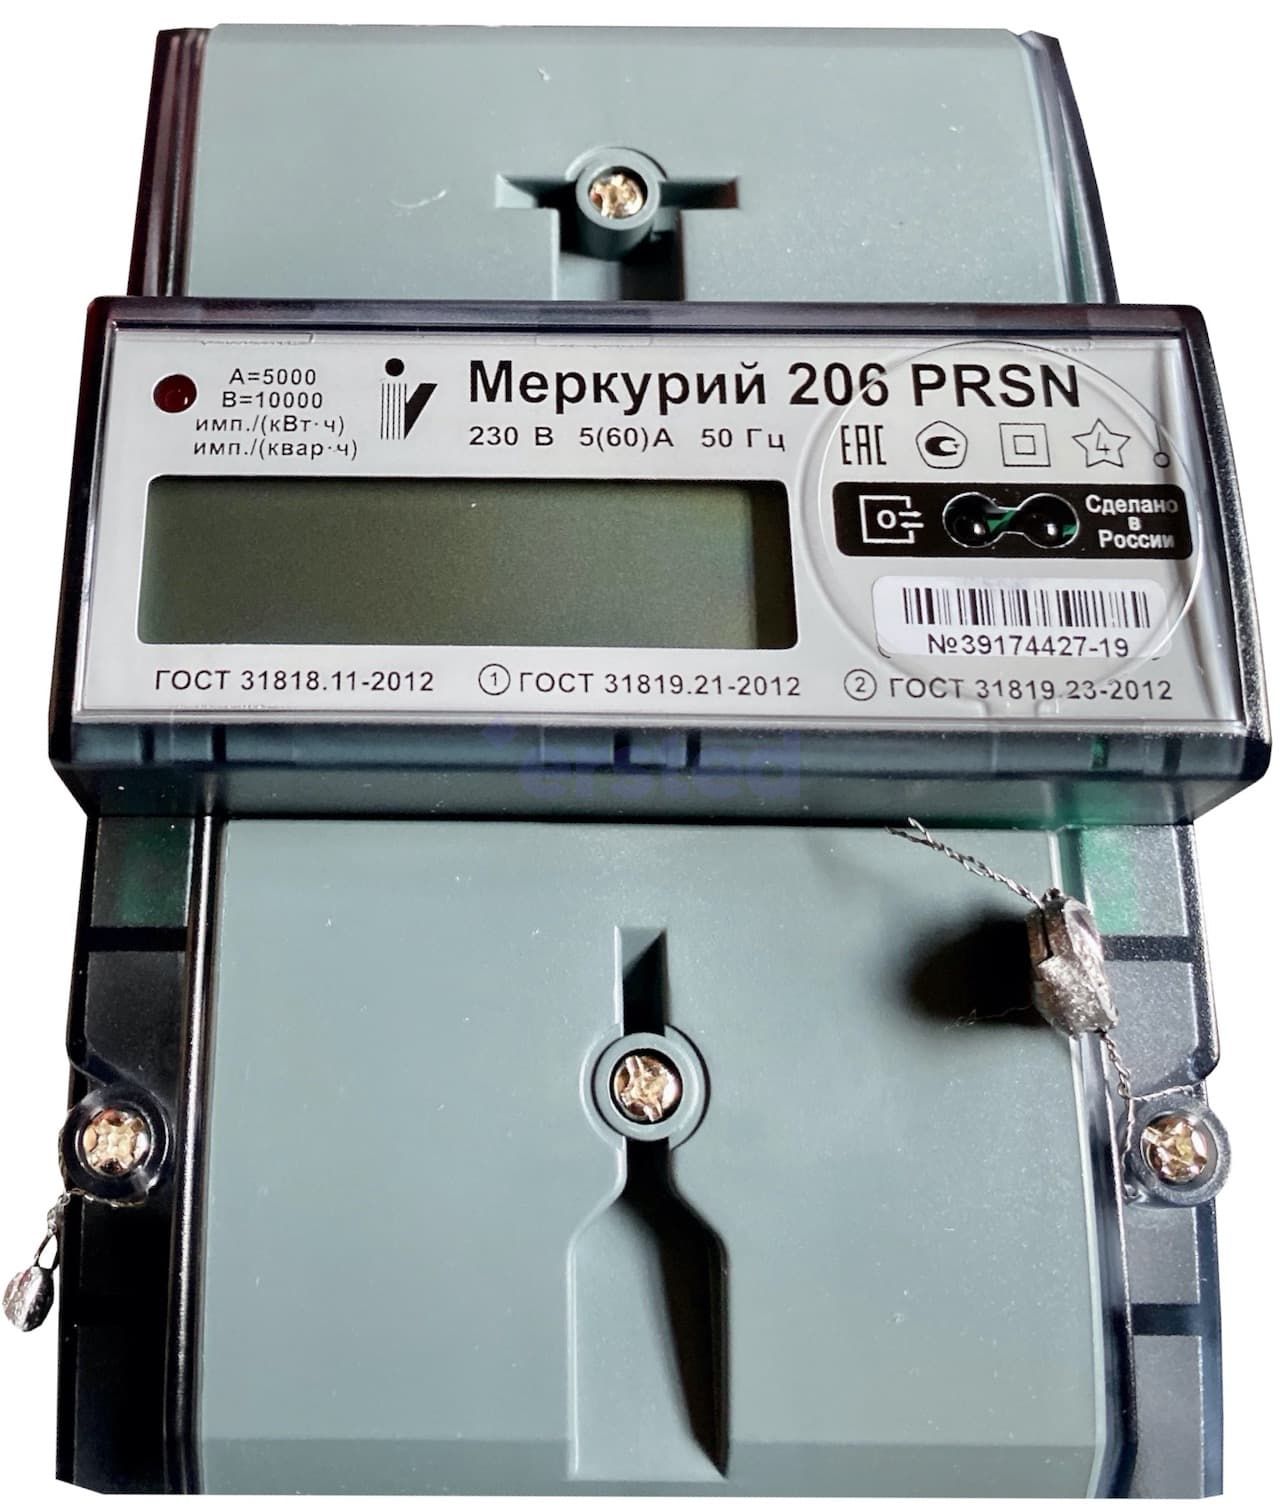 Меркурий 206 PRSN 5-60А, 230В Электросчетчик однофазный, многотарифный, фото 